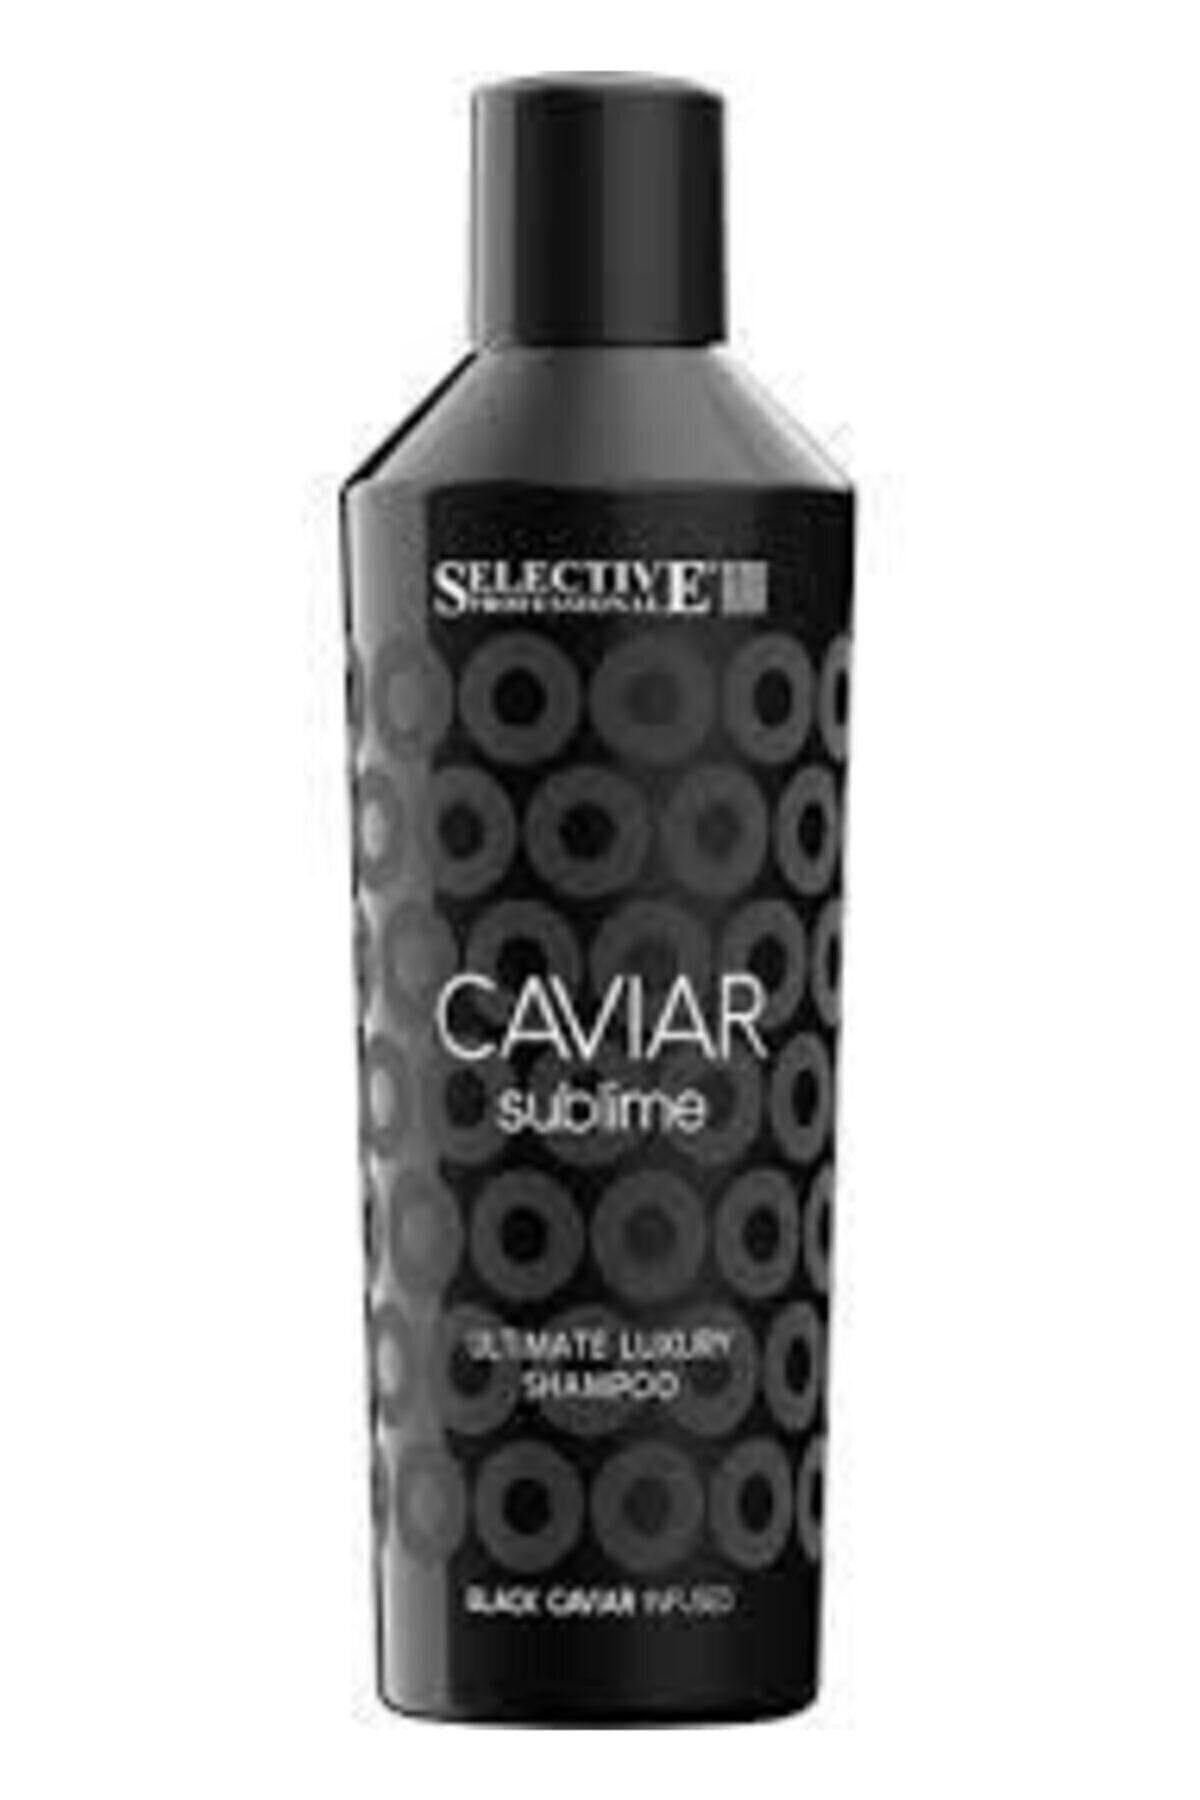 Selective Caviar Sublime Ultimate Luxury Şampuan Newonlıne.22